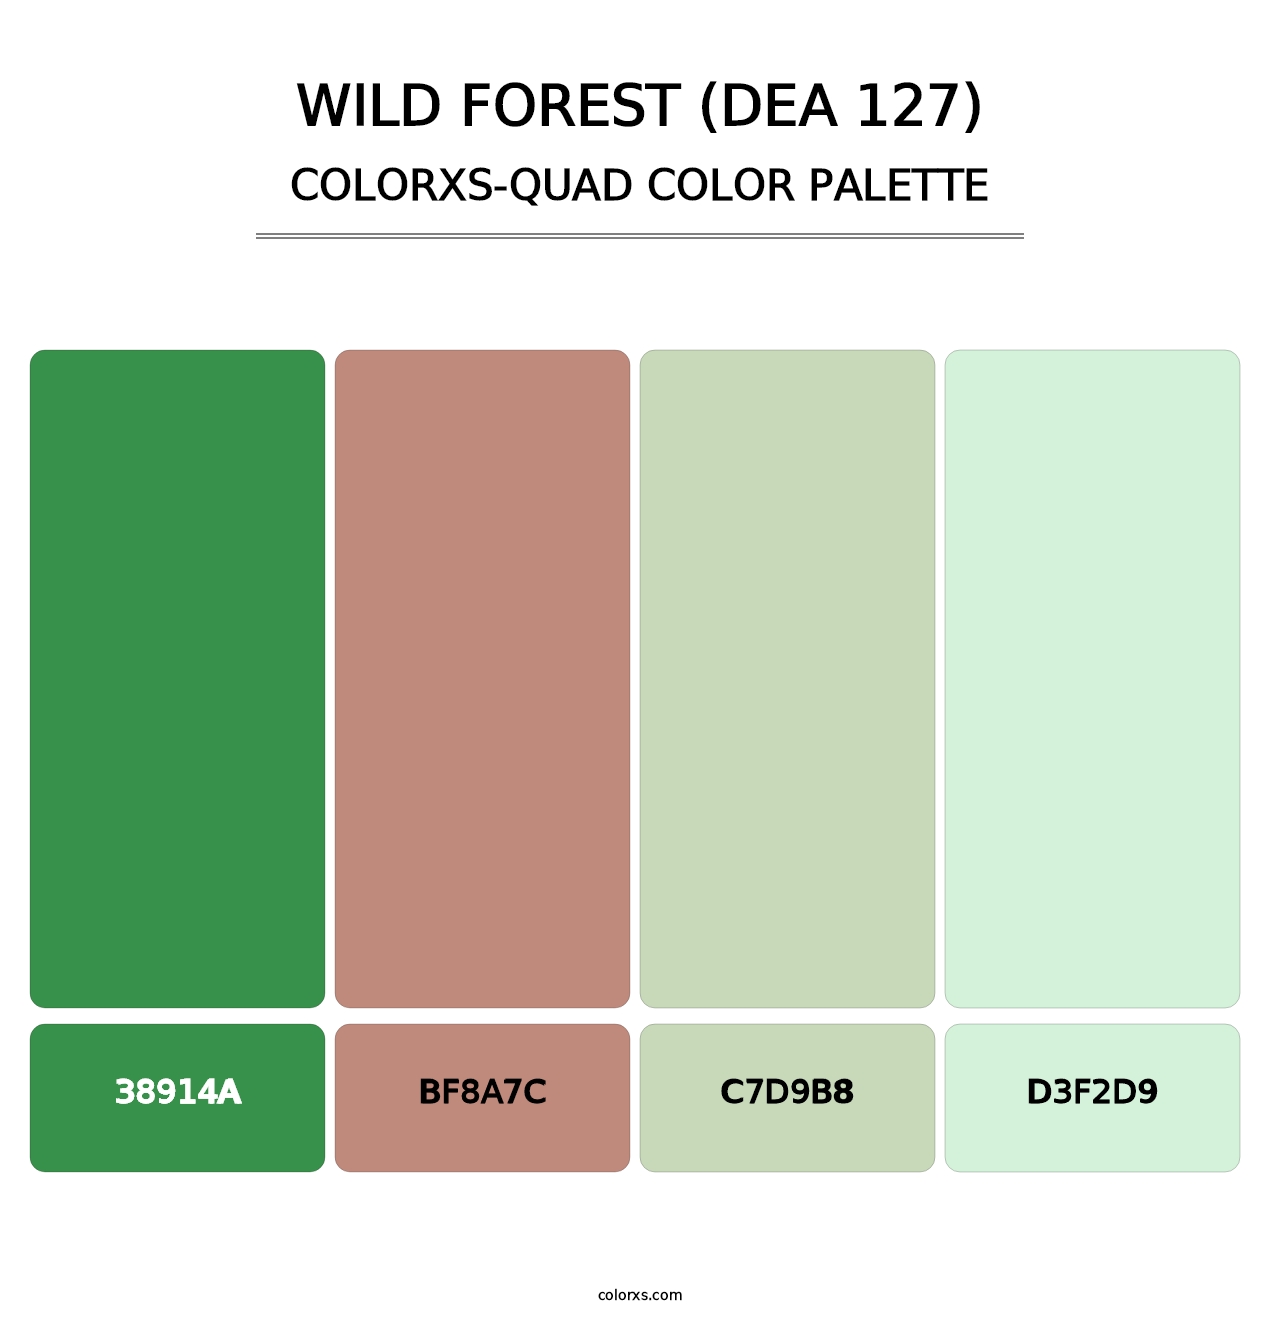 Wild Forest (DEA 127) - Colorxs Quad Palette